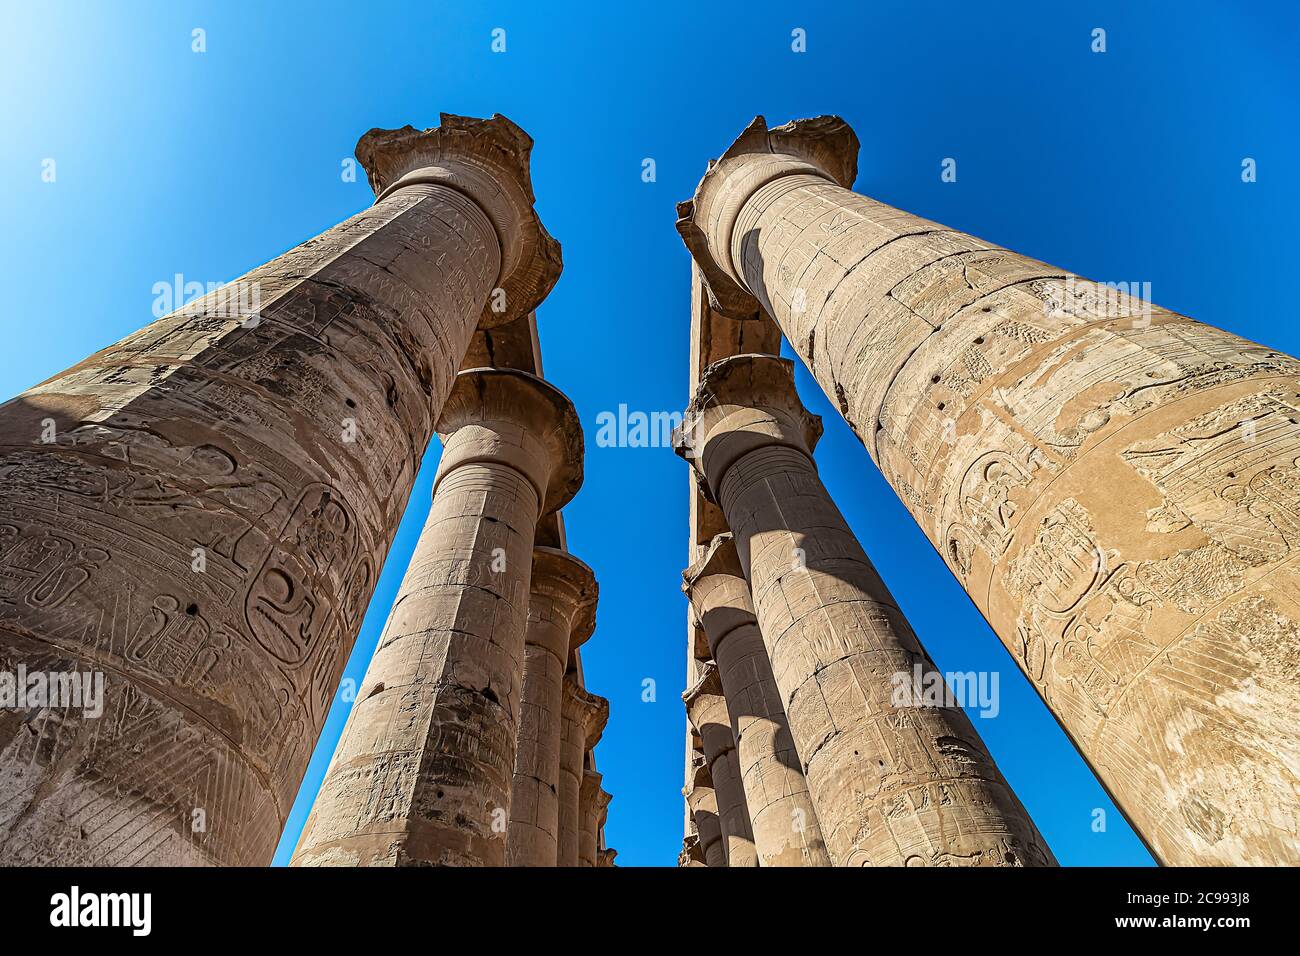 Columnas en el Templo de Luxor, un gran complejo de templos antiguos egipcios situado en la orilla este del río Nilo en la ciudad hoy conocida como Luxor (anci Foto de stock